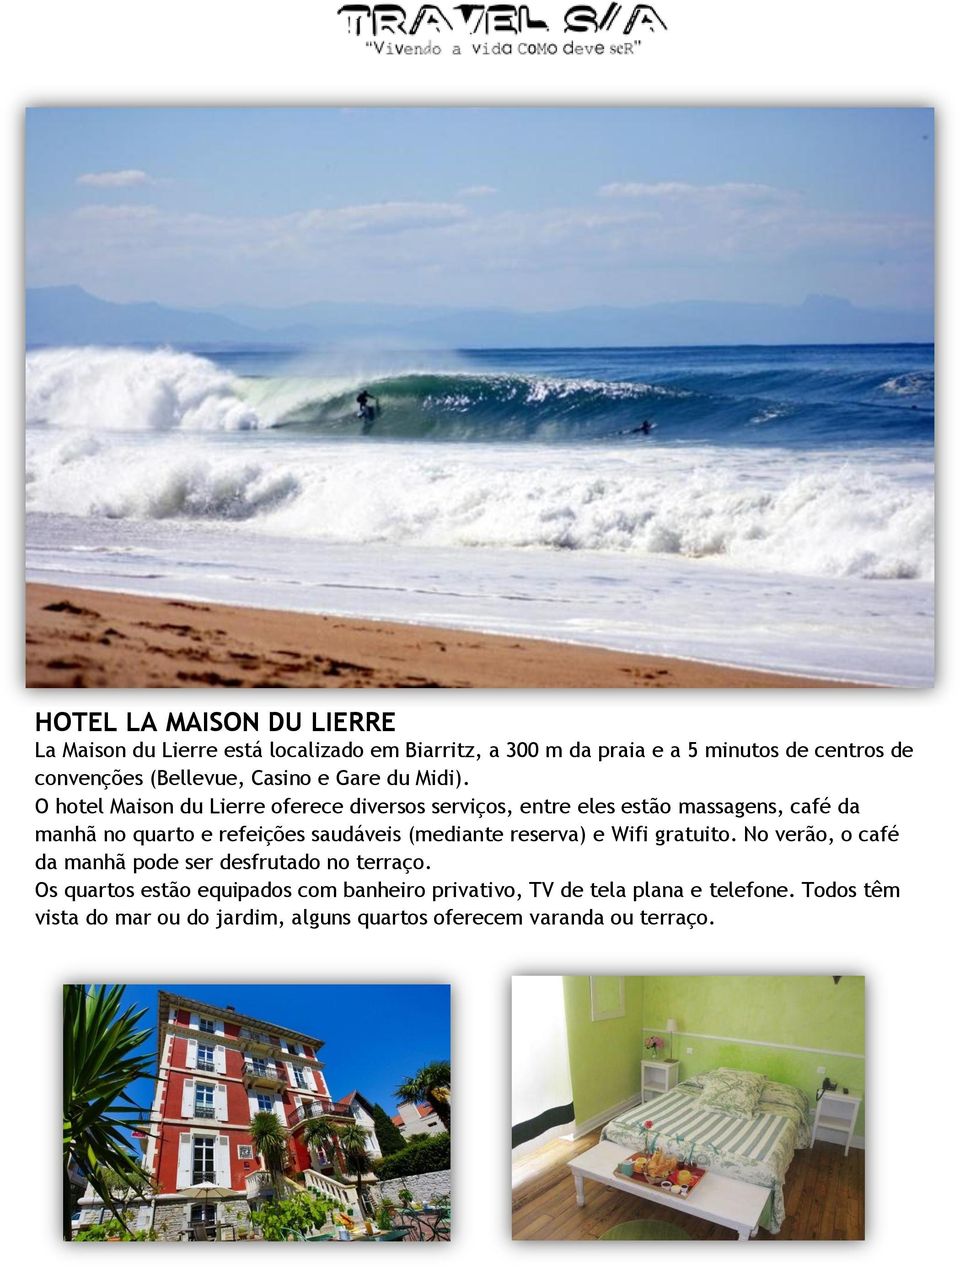 O hotel Maison du Lierre oferece diversos serviços, entre eles estão massagens, café da manhã no quarto e refeições saudáveis (mediante